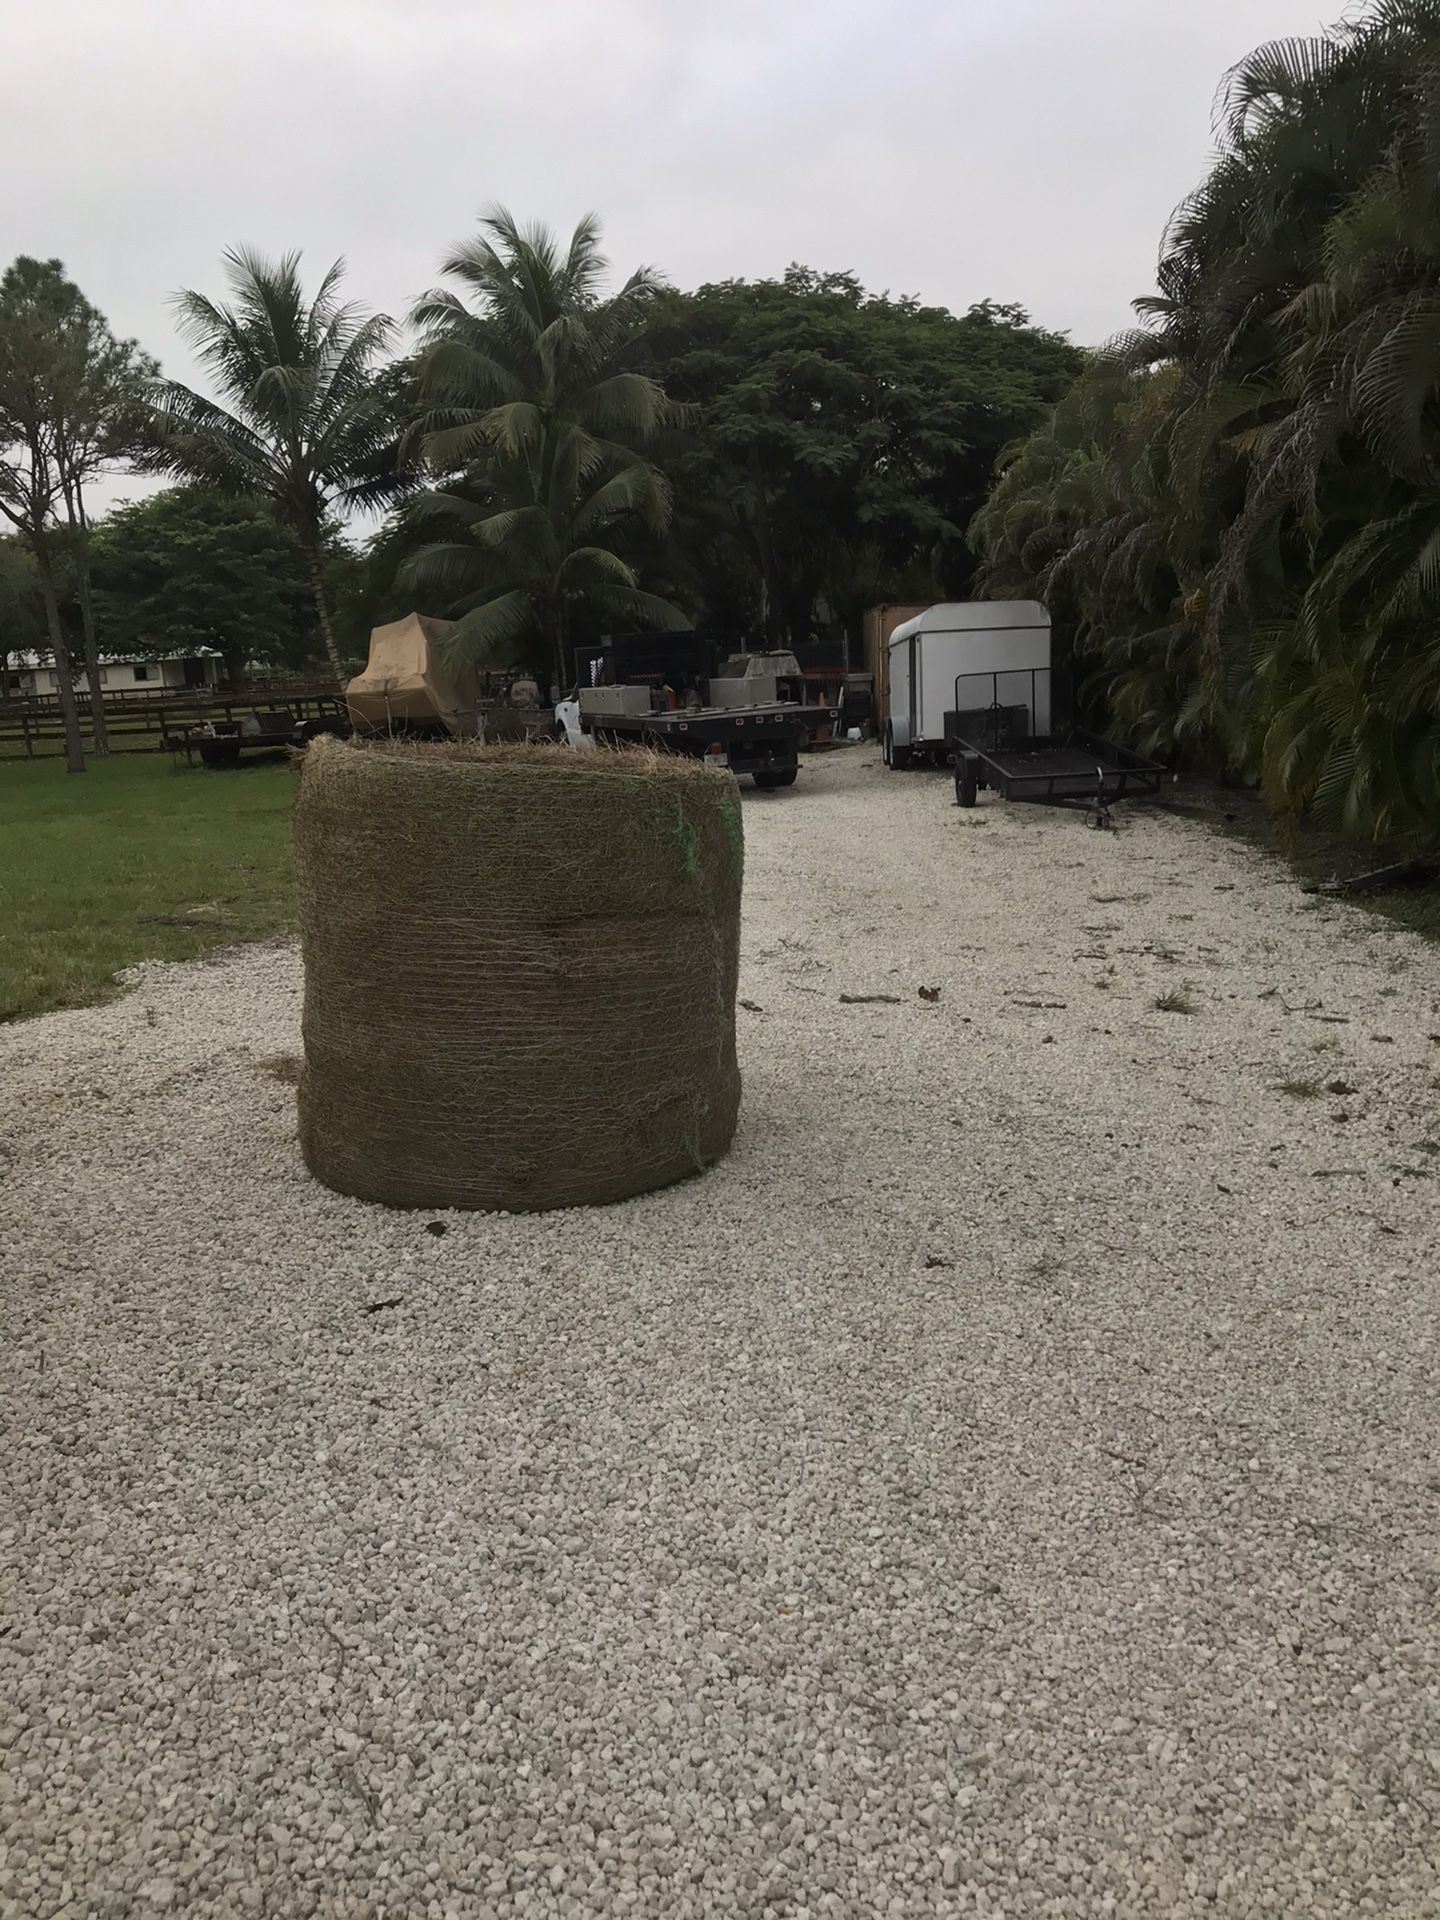 Round bale hay